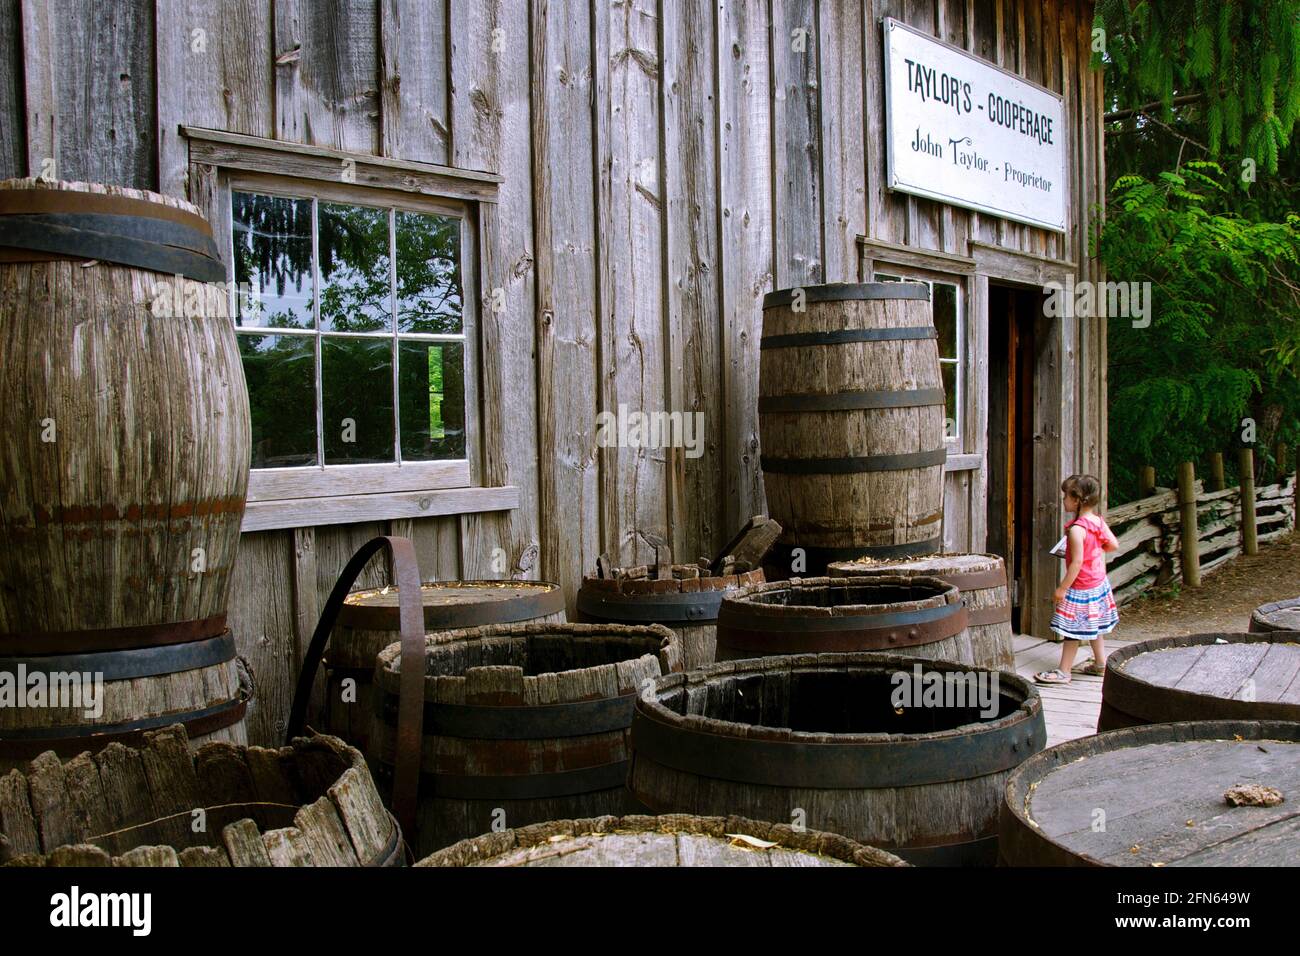 York, Ontario / Canada - 27 mai 2012 : fille dans une ferme avec baril de vin en bois Banque D'Images